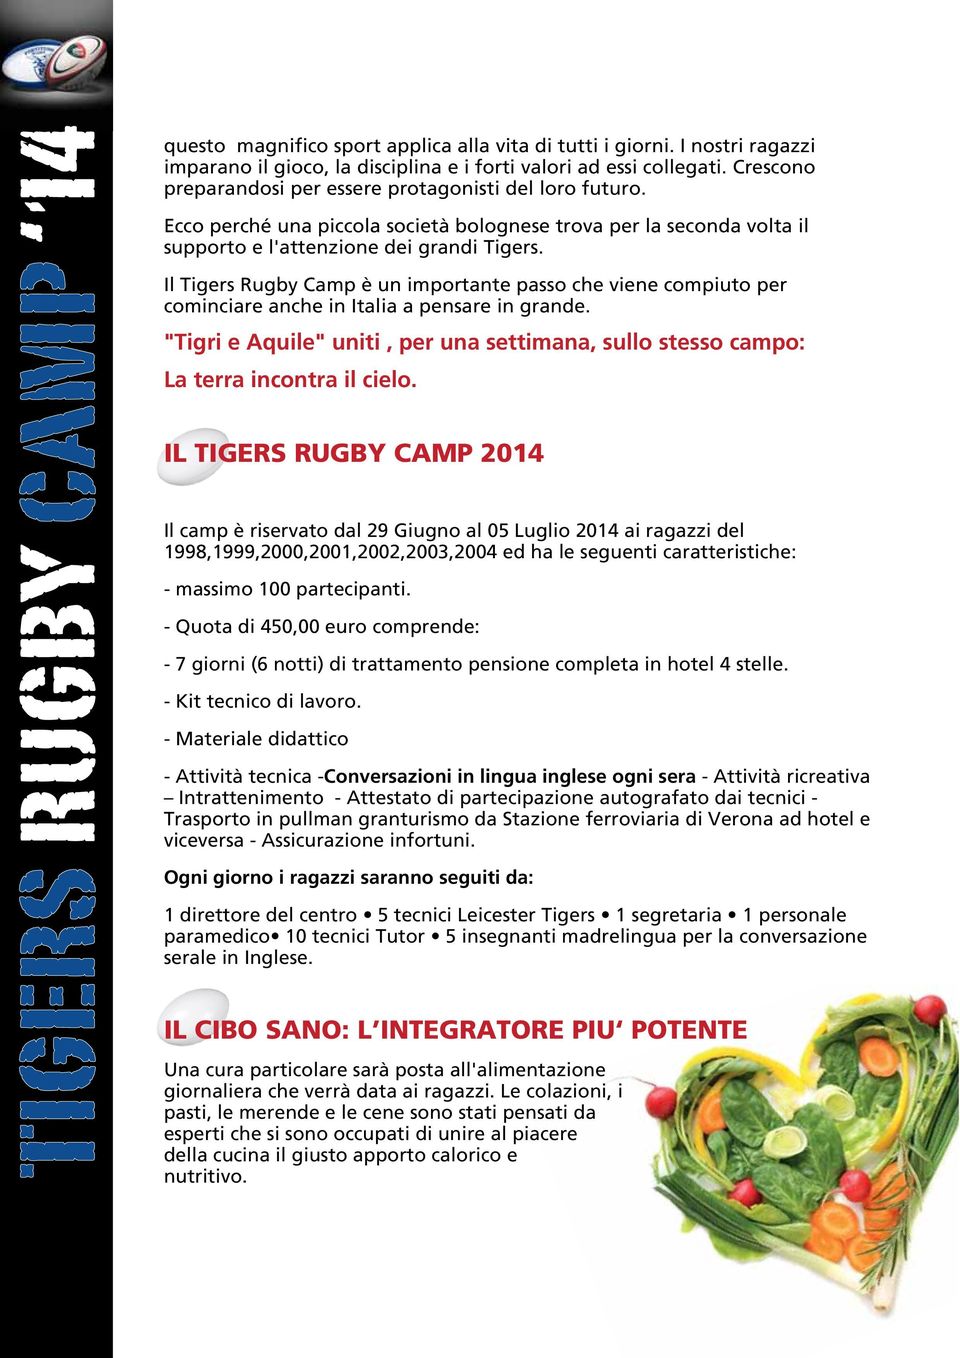 Il Tigers Rugby Camp è un importante passo che viene compiuto per cominciare anche in Italia a pensare in grande.